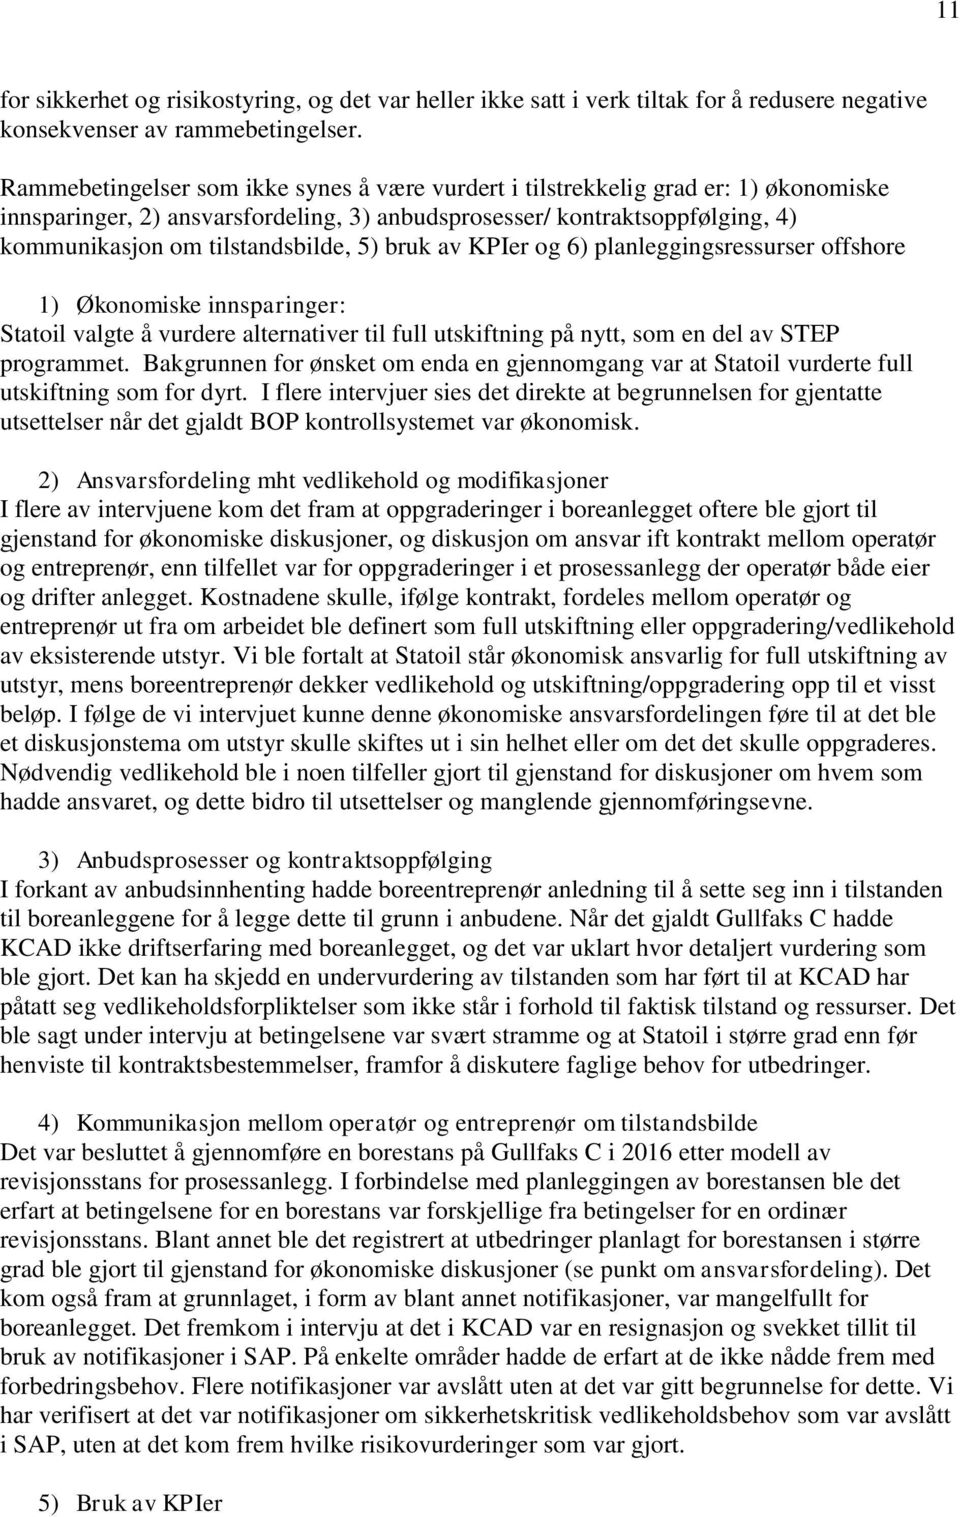 5) bruk av KPIer og 6) planleggingsressurser offshore 1) Økonomiske innsparinger: Statoil valgte å vurdere alternativer til full utskiftning på nytt, som en del av STEP programmet.